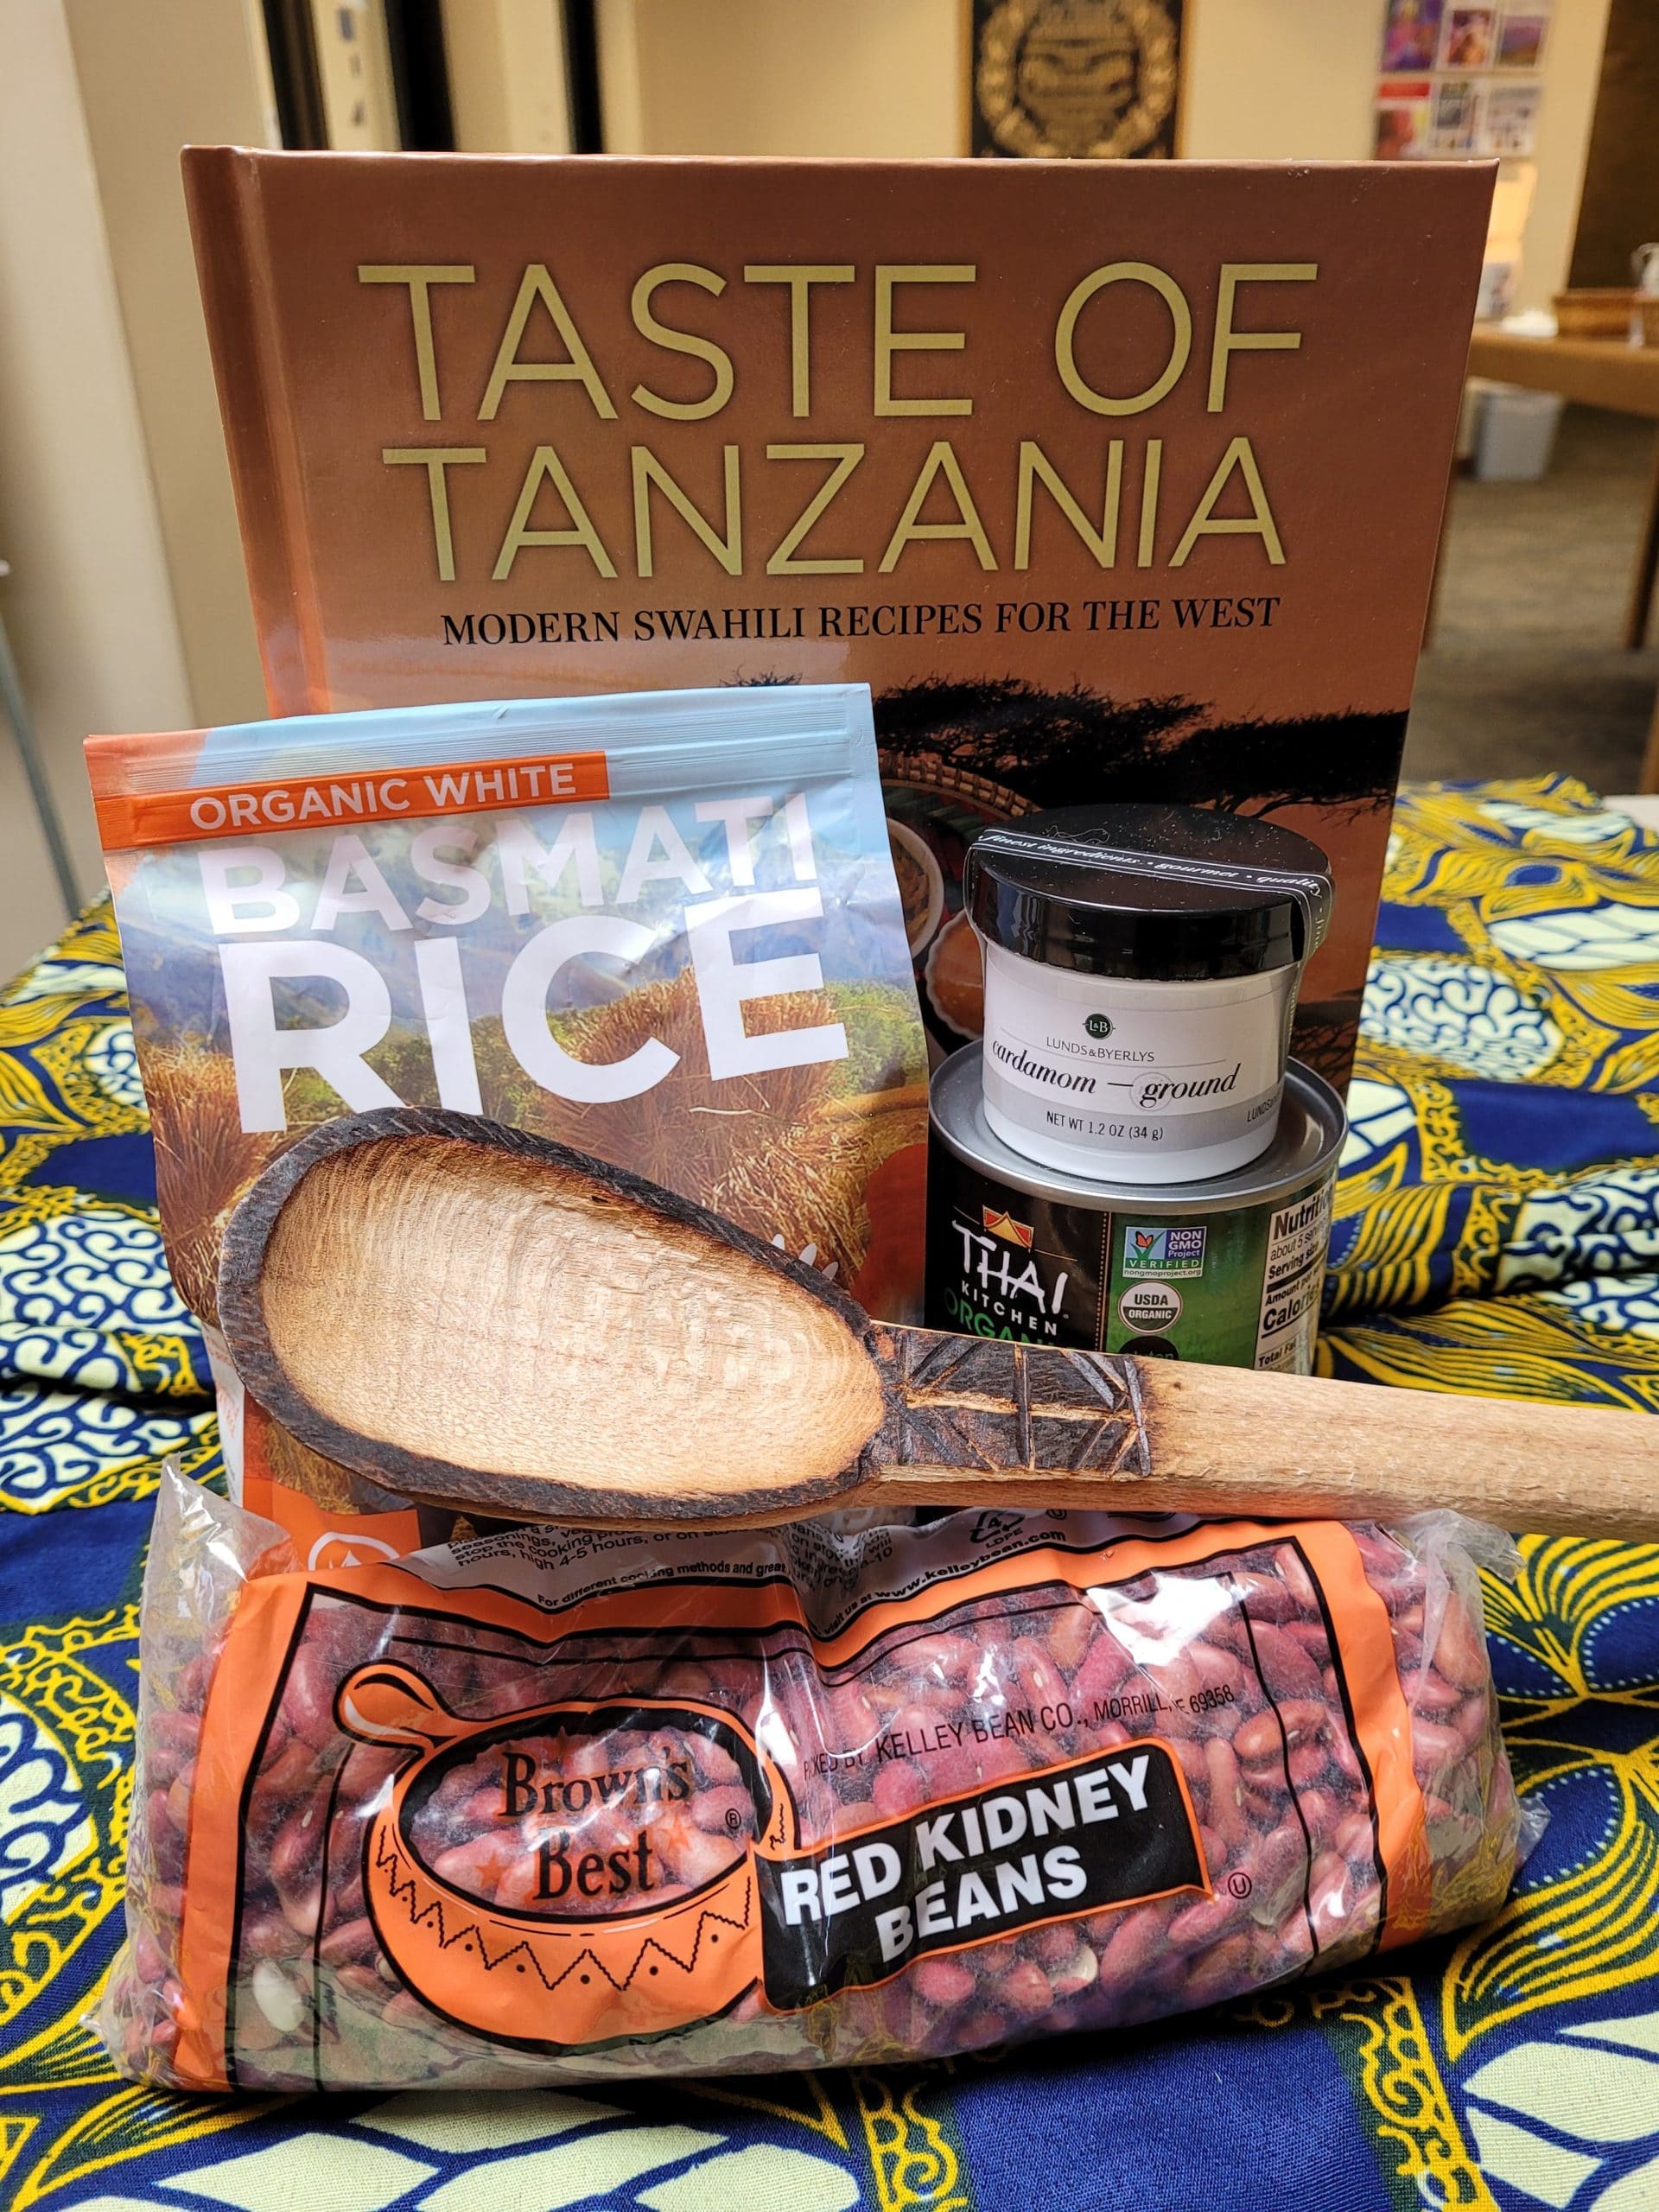 Auction Item - A Taste of Tanzania Cookbook Bundle